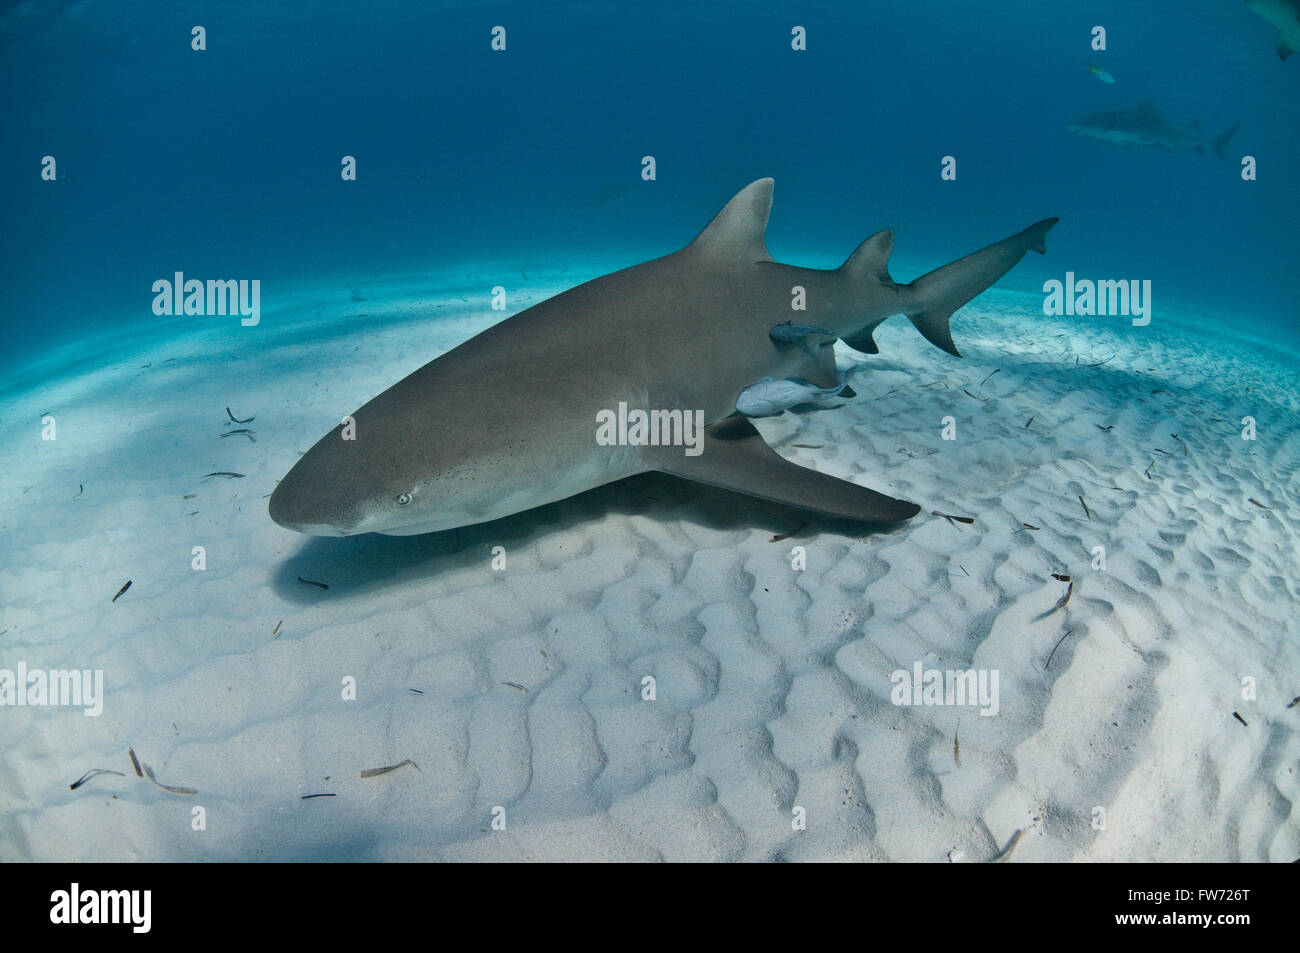 A lemon shark resting on the ocean floor Stock Photo